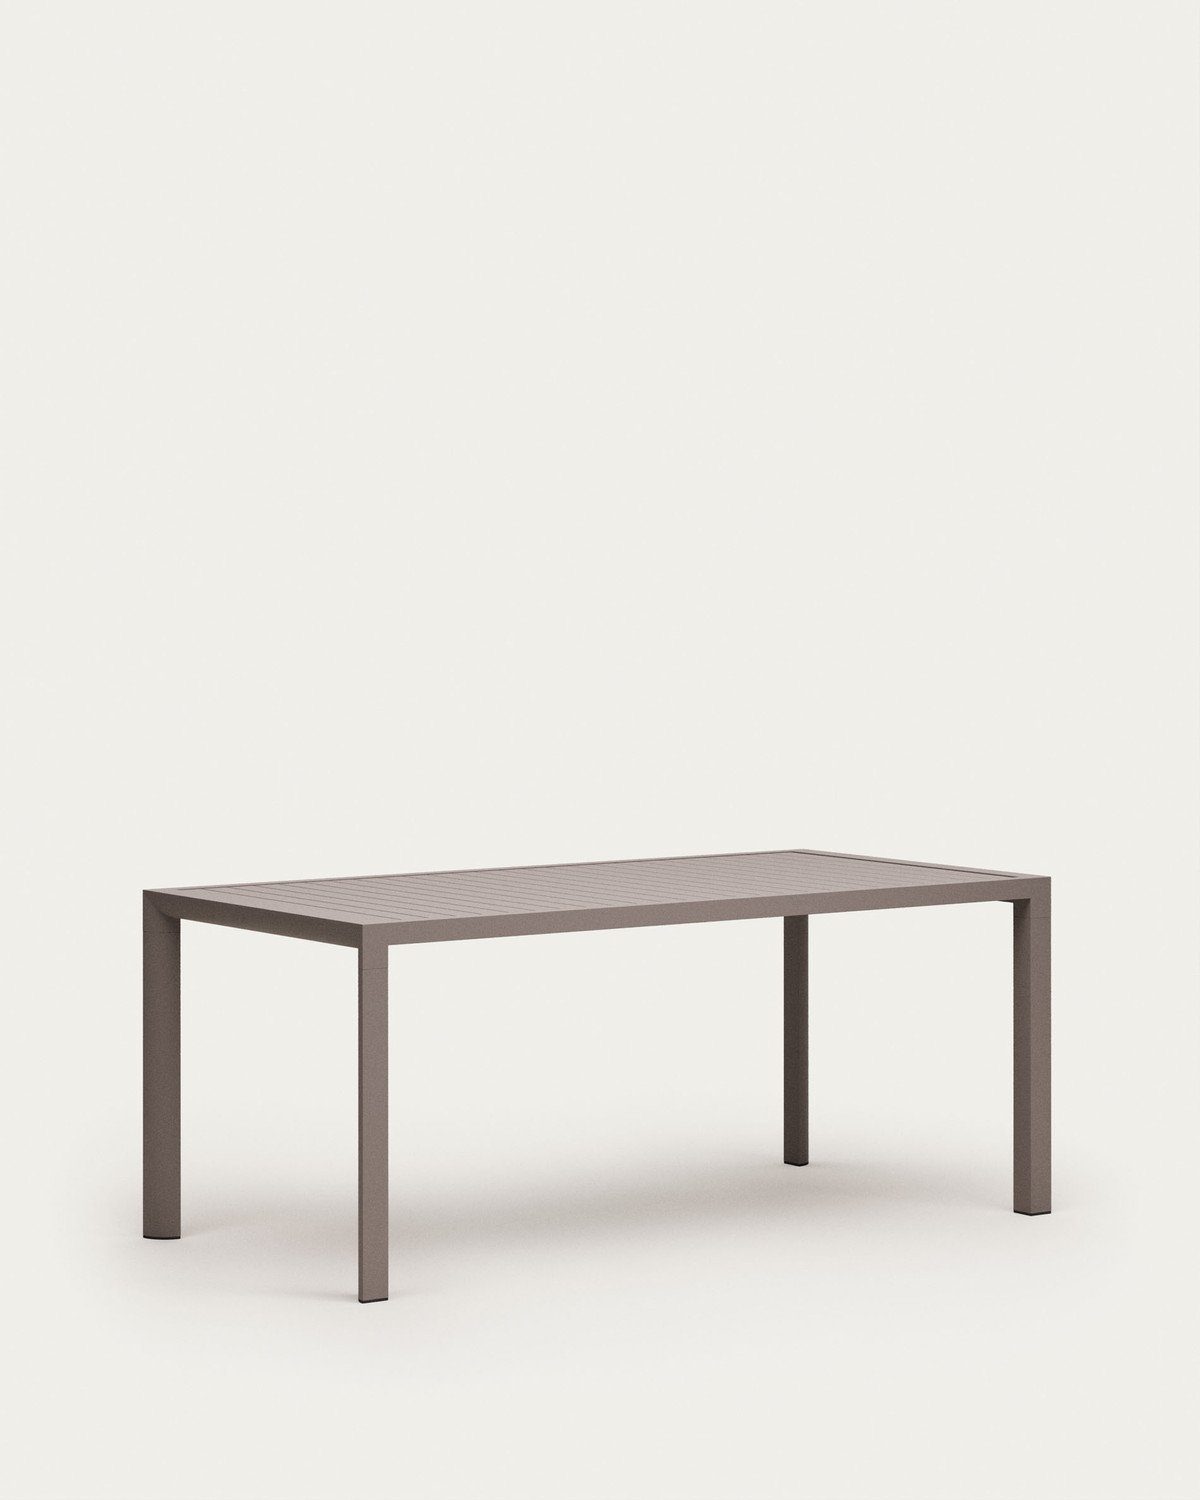 90x180x75cm Gartentisch Esstisch Outdoor braun Natur24 Aluminium Tisch Culip Esstisch